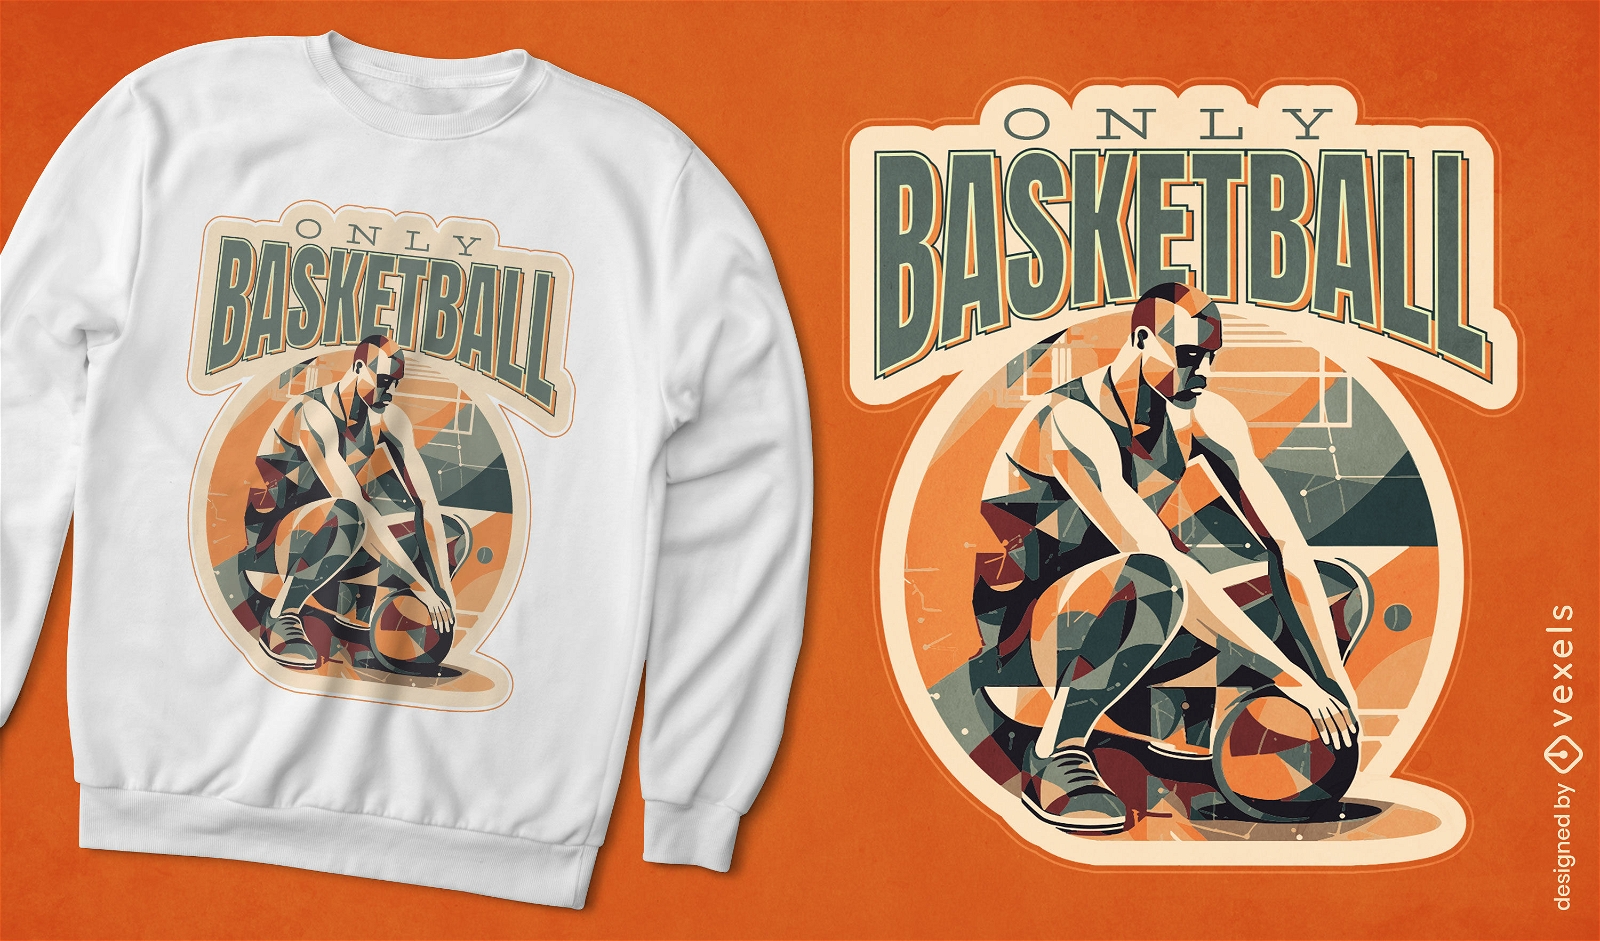 Dise?o de camiseta geom?trica de jugador de baloncesto.